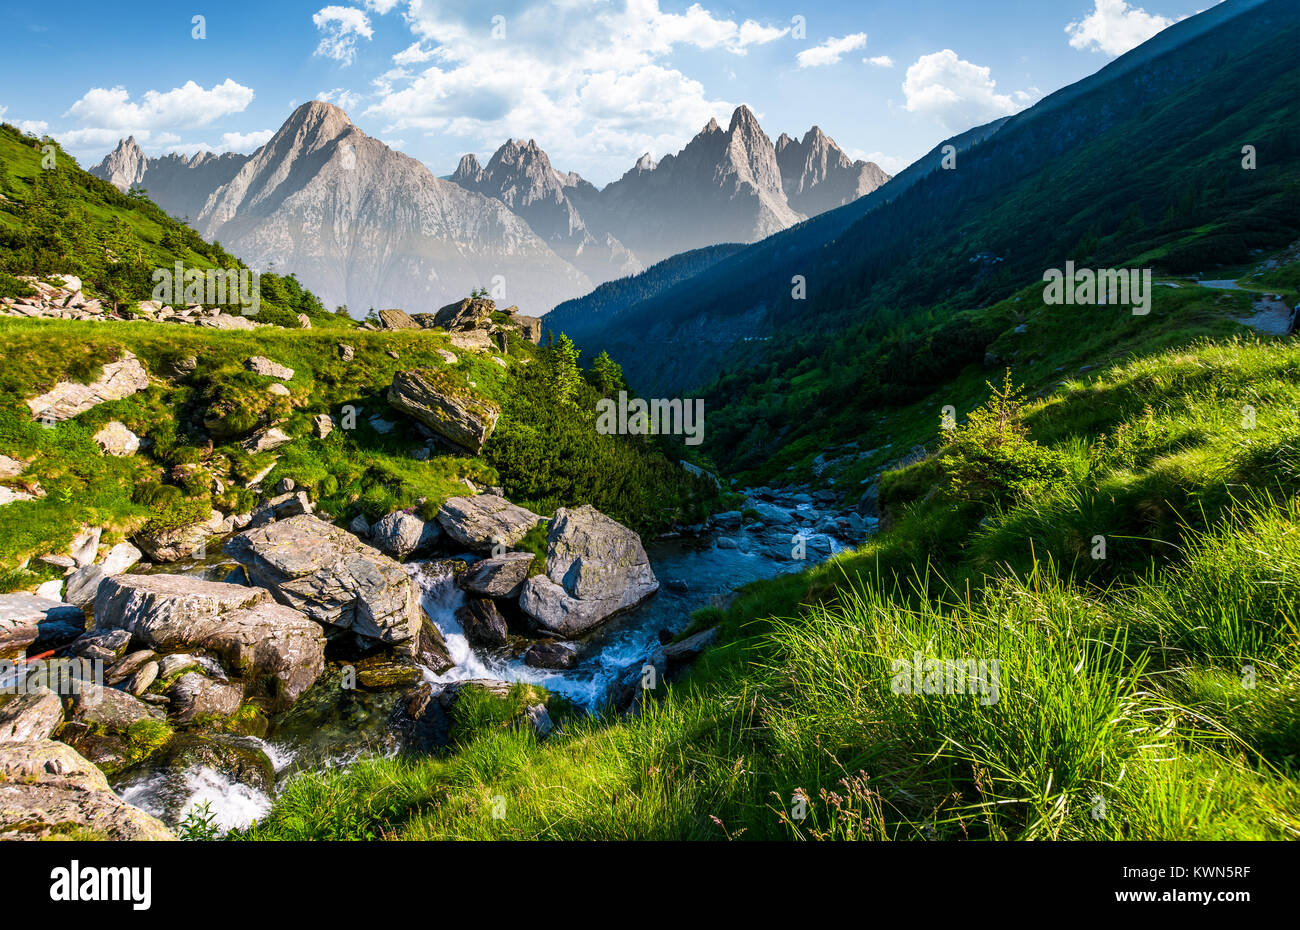 Flusso tra le rocce in valle erbosa. splendida estate paesaggio composito con Alti Tatra montagna cresta in una distanza Foto Stock